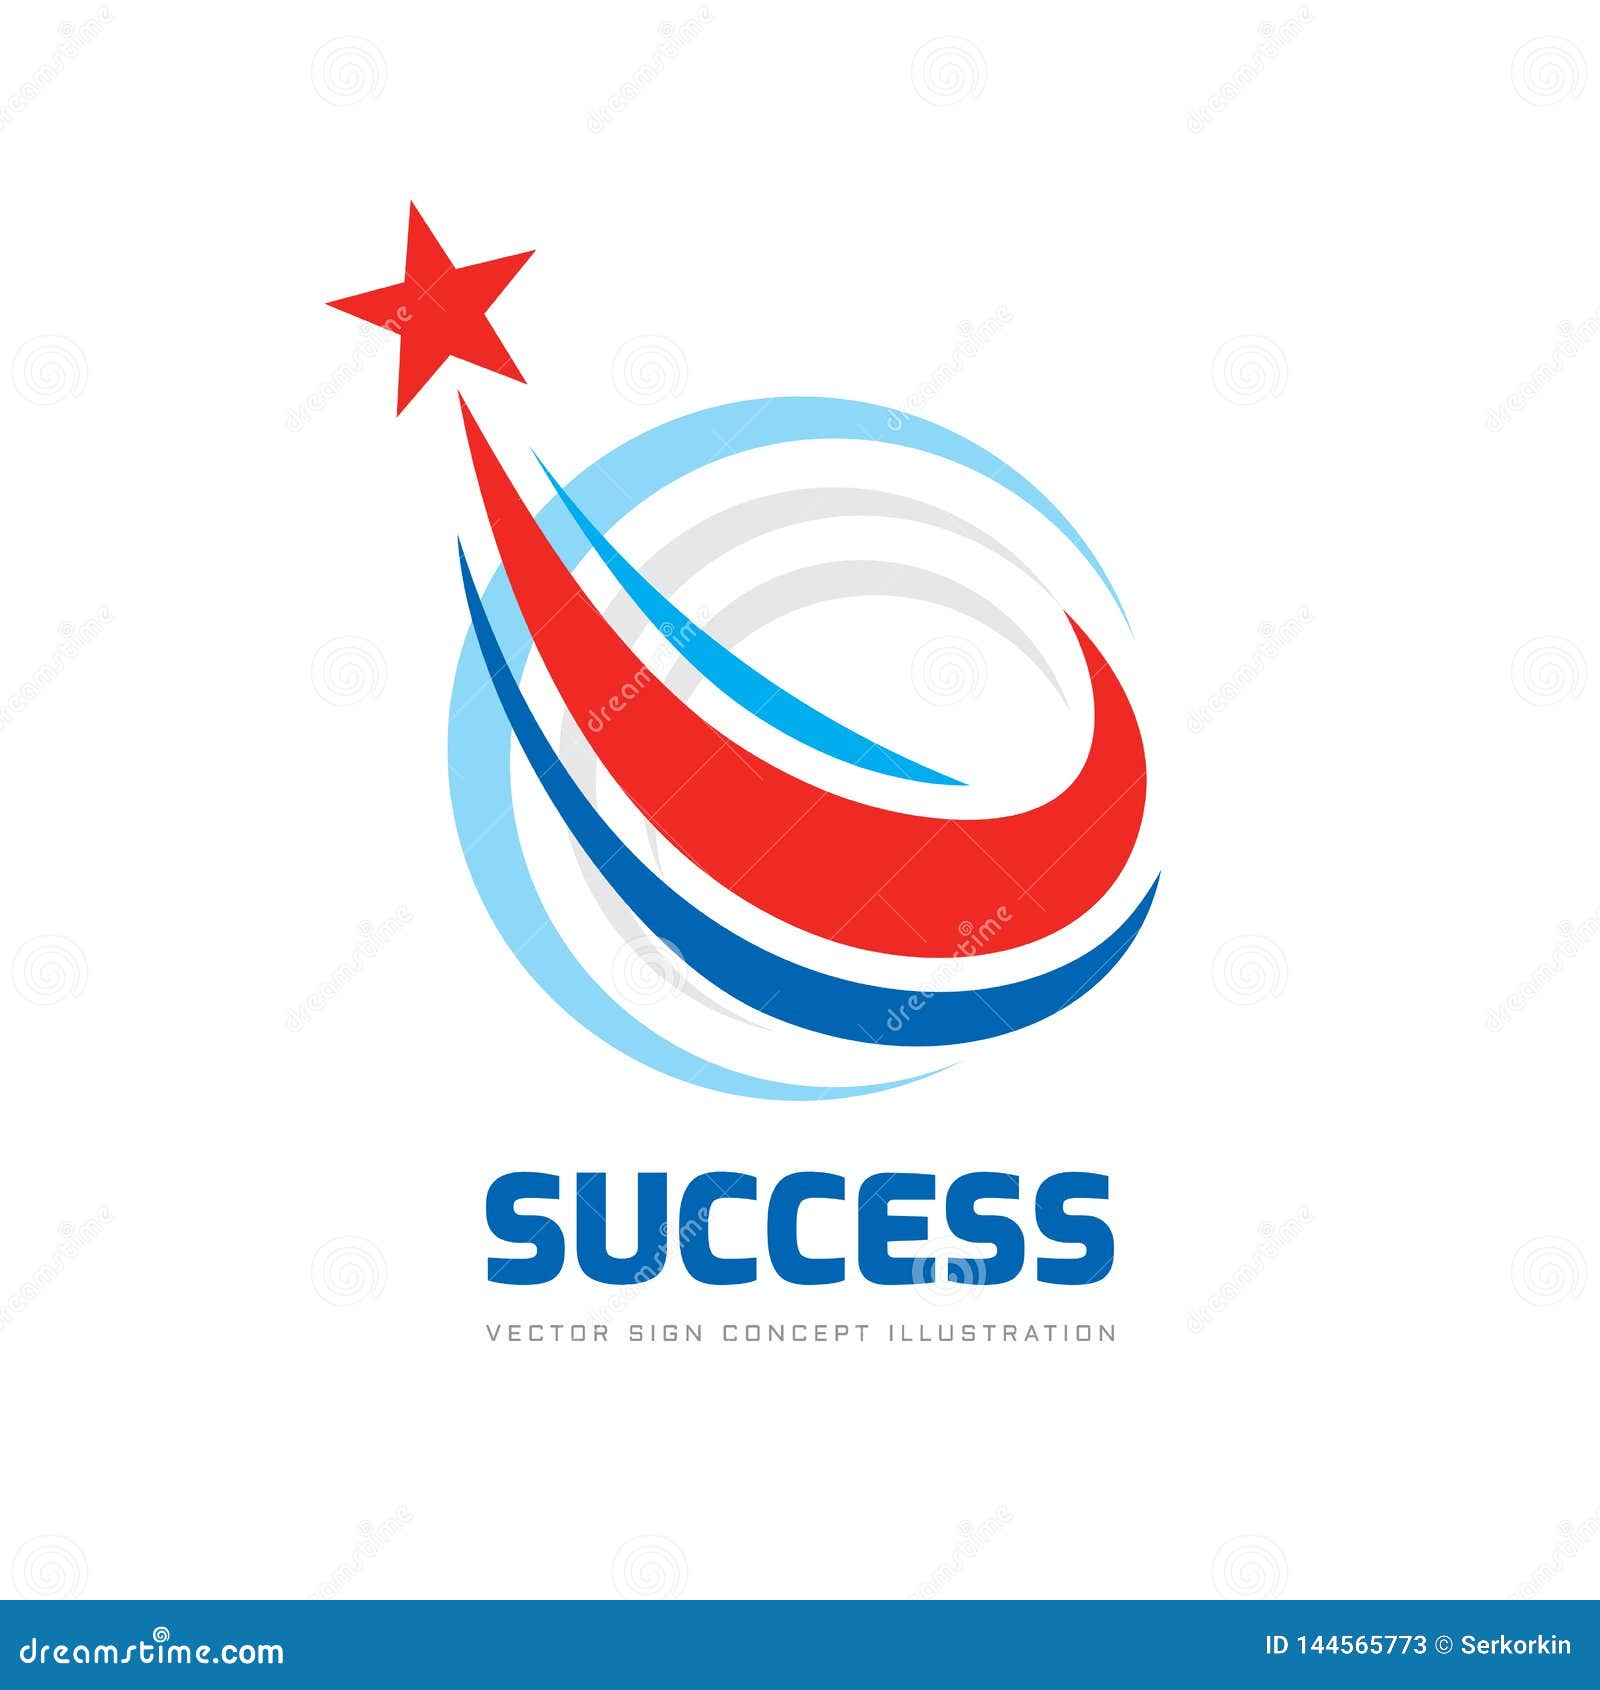 Details 139+ success logo images best - camera.edu.vn